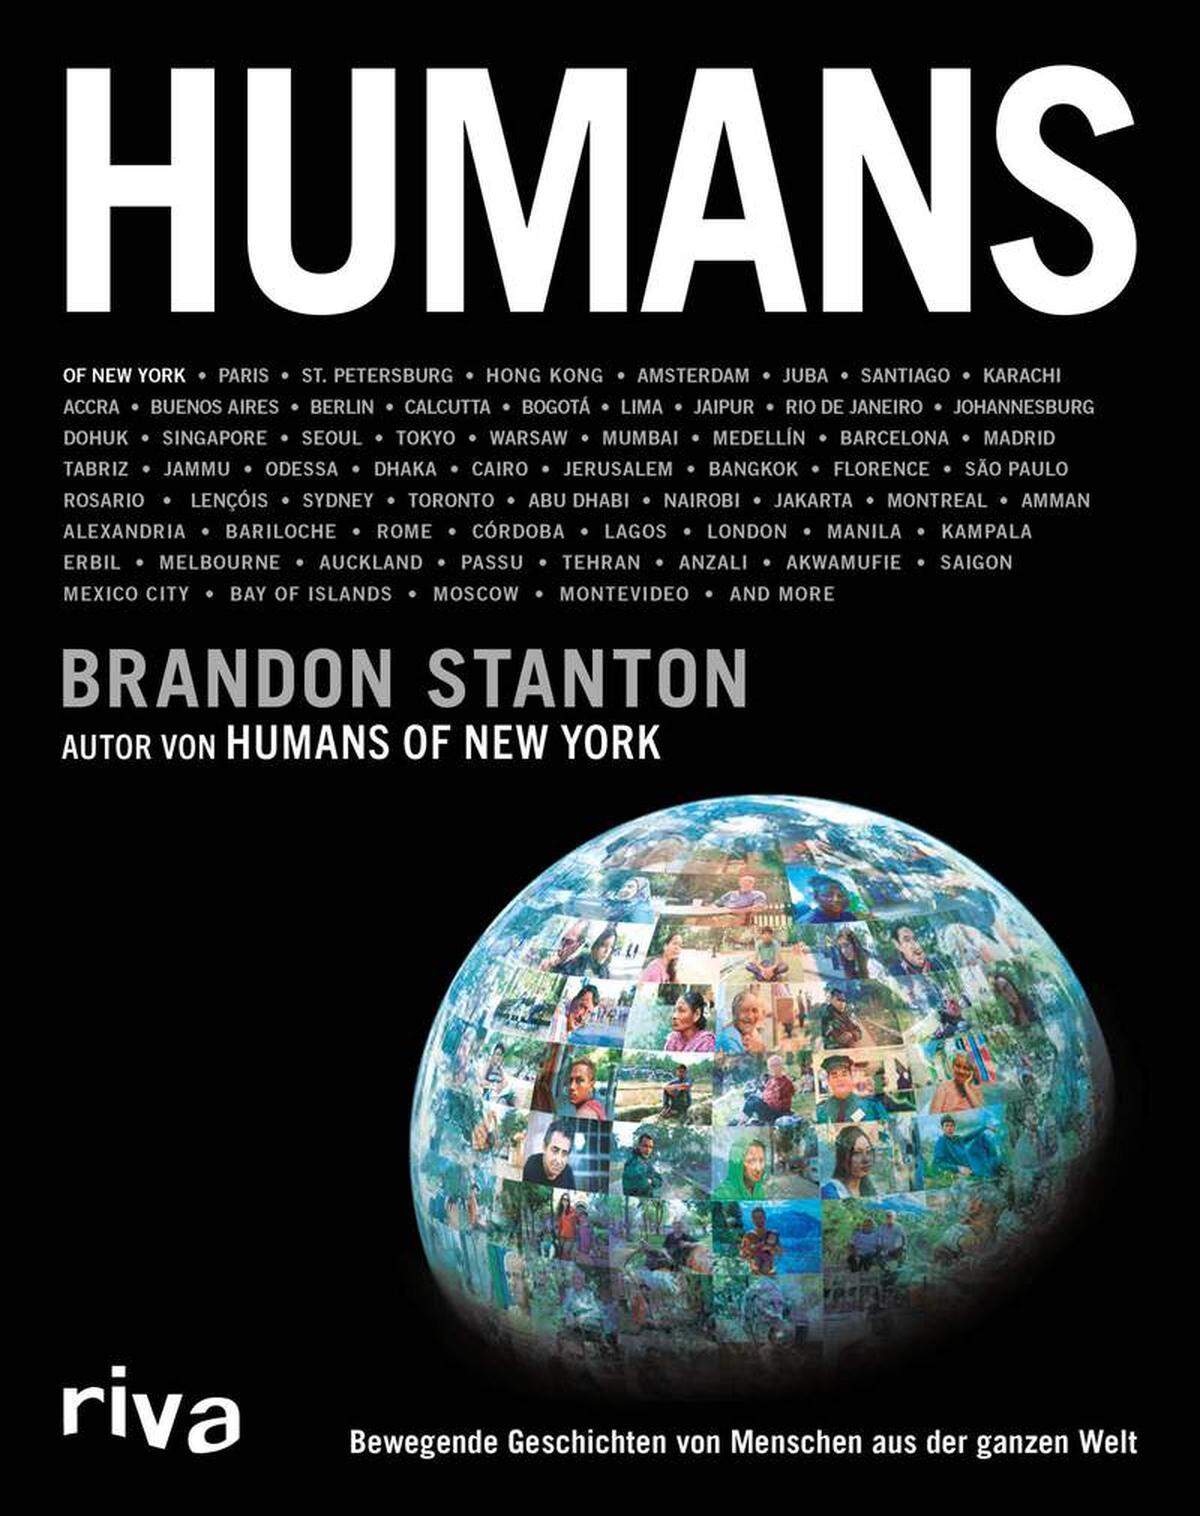 Weitere Porträts versammelt der Bildband "Humans: Bewegende Geschichten von Menschen aus der ganzen Welt." Erscheint im riva Verlag, 448 Seiten, 25,70 Euro.